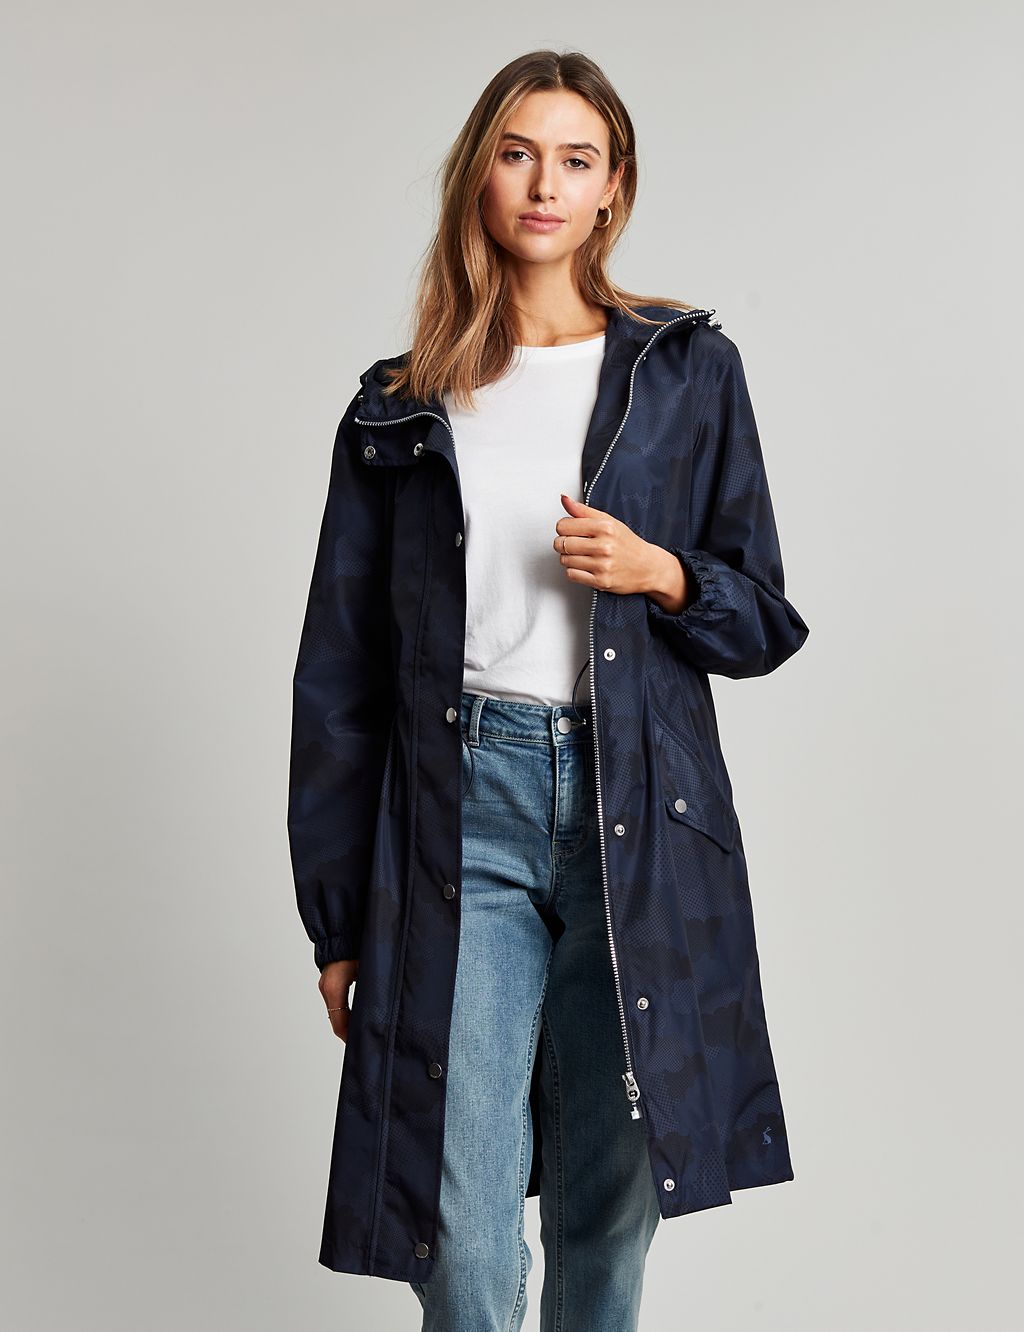 Waterproof Printed Hooded Longline Raincoat | Joules | M&S